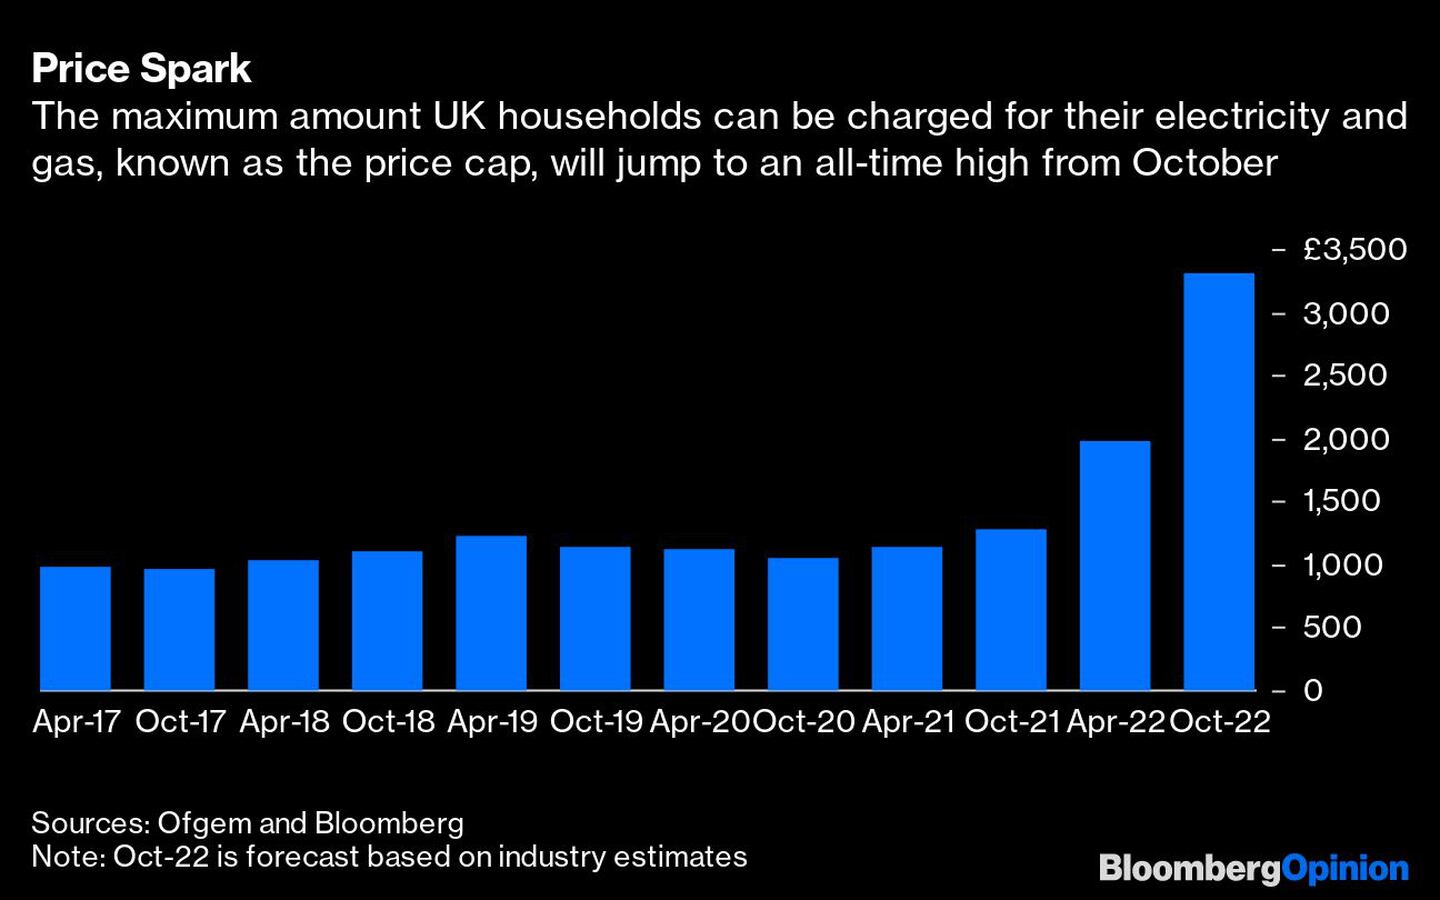 El importe máximo que se puede cobrar a los hogares británicos por su electricidad y gas, conocido como price cap, subirá a un máximo histórico a partir de octubredfd